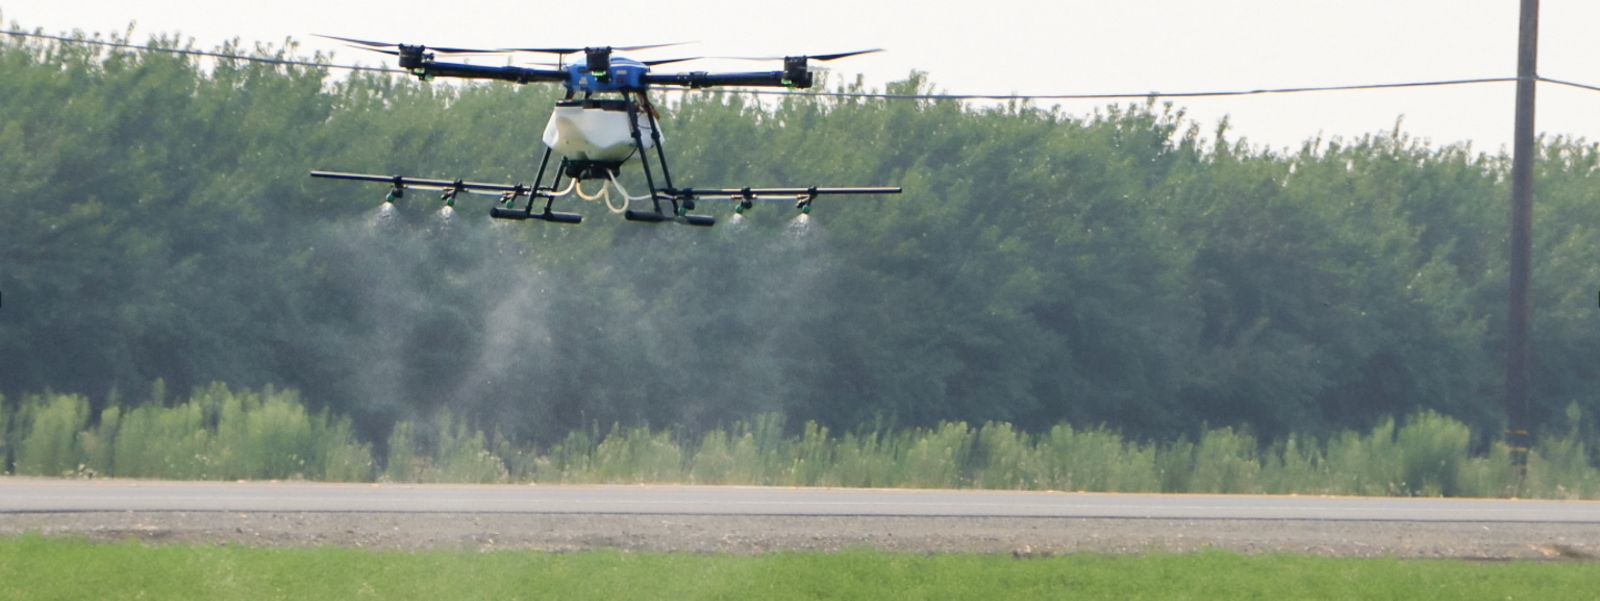 Studies tout precise pesticide applications, drones